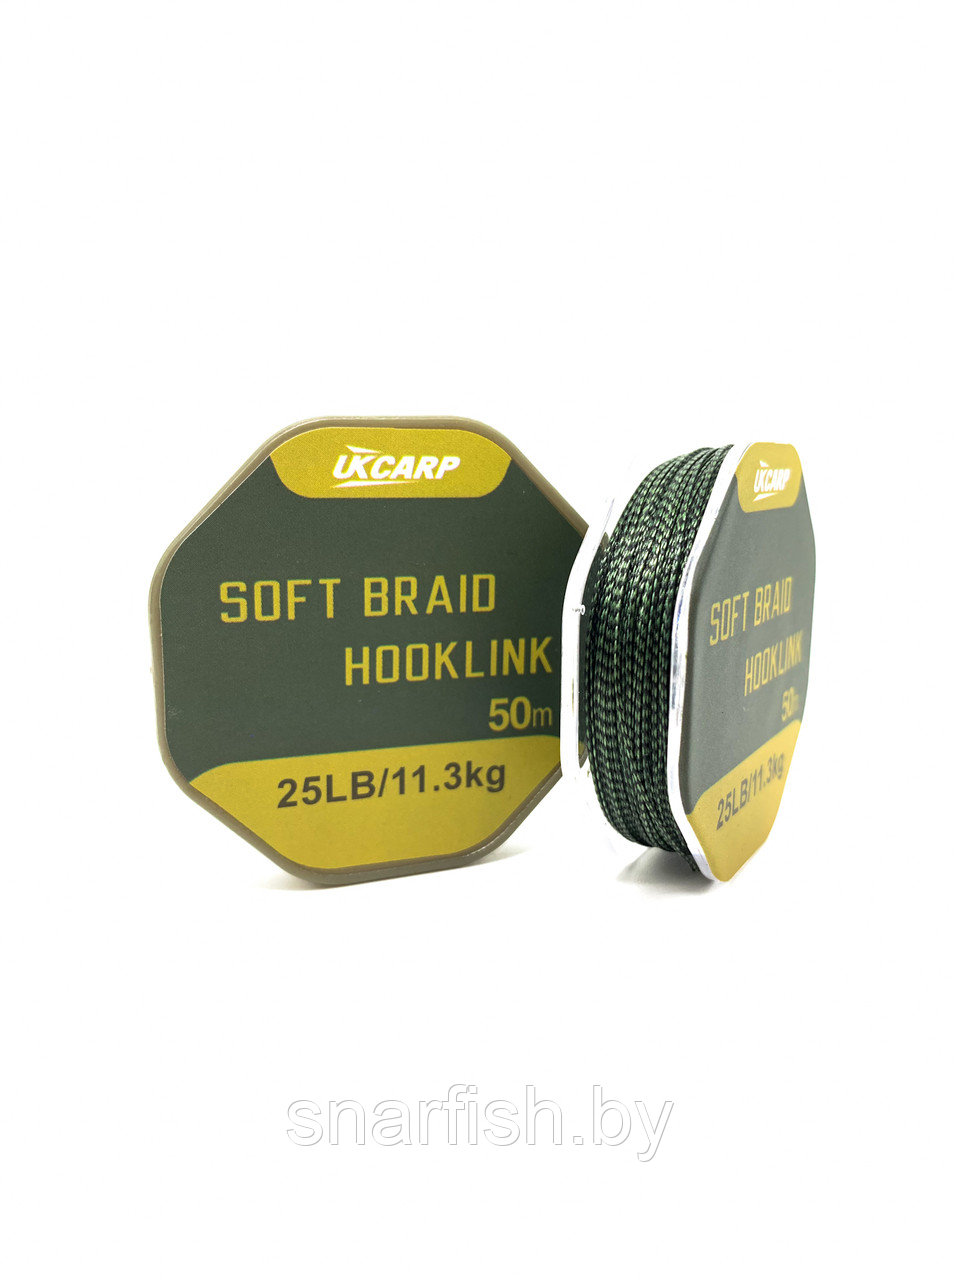 Поводковый материал без оболочки UKCARP Soft Braid Hooklink 50м 11.3кг 25lb